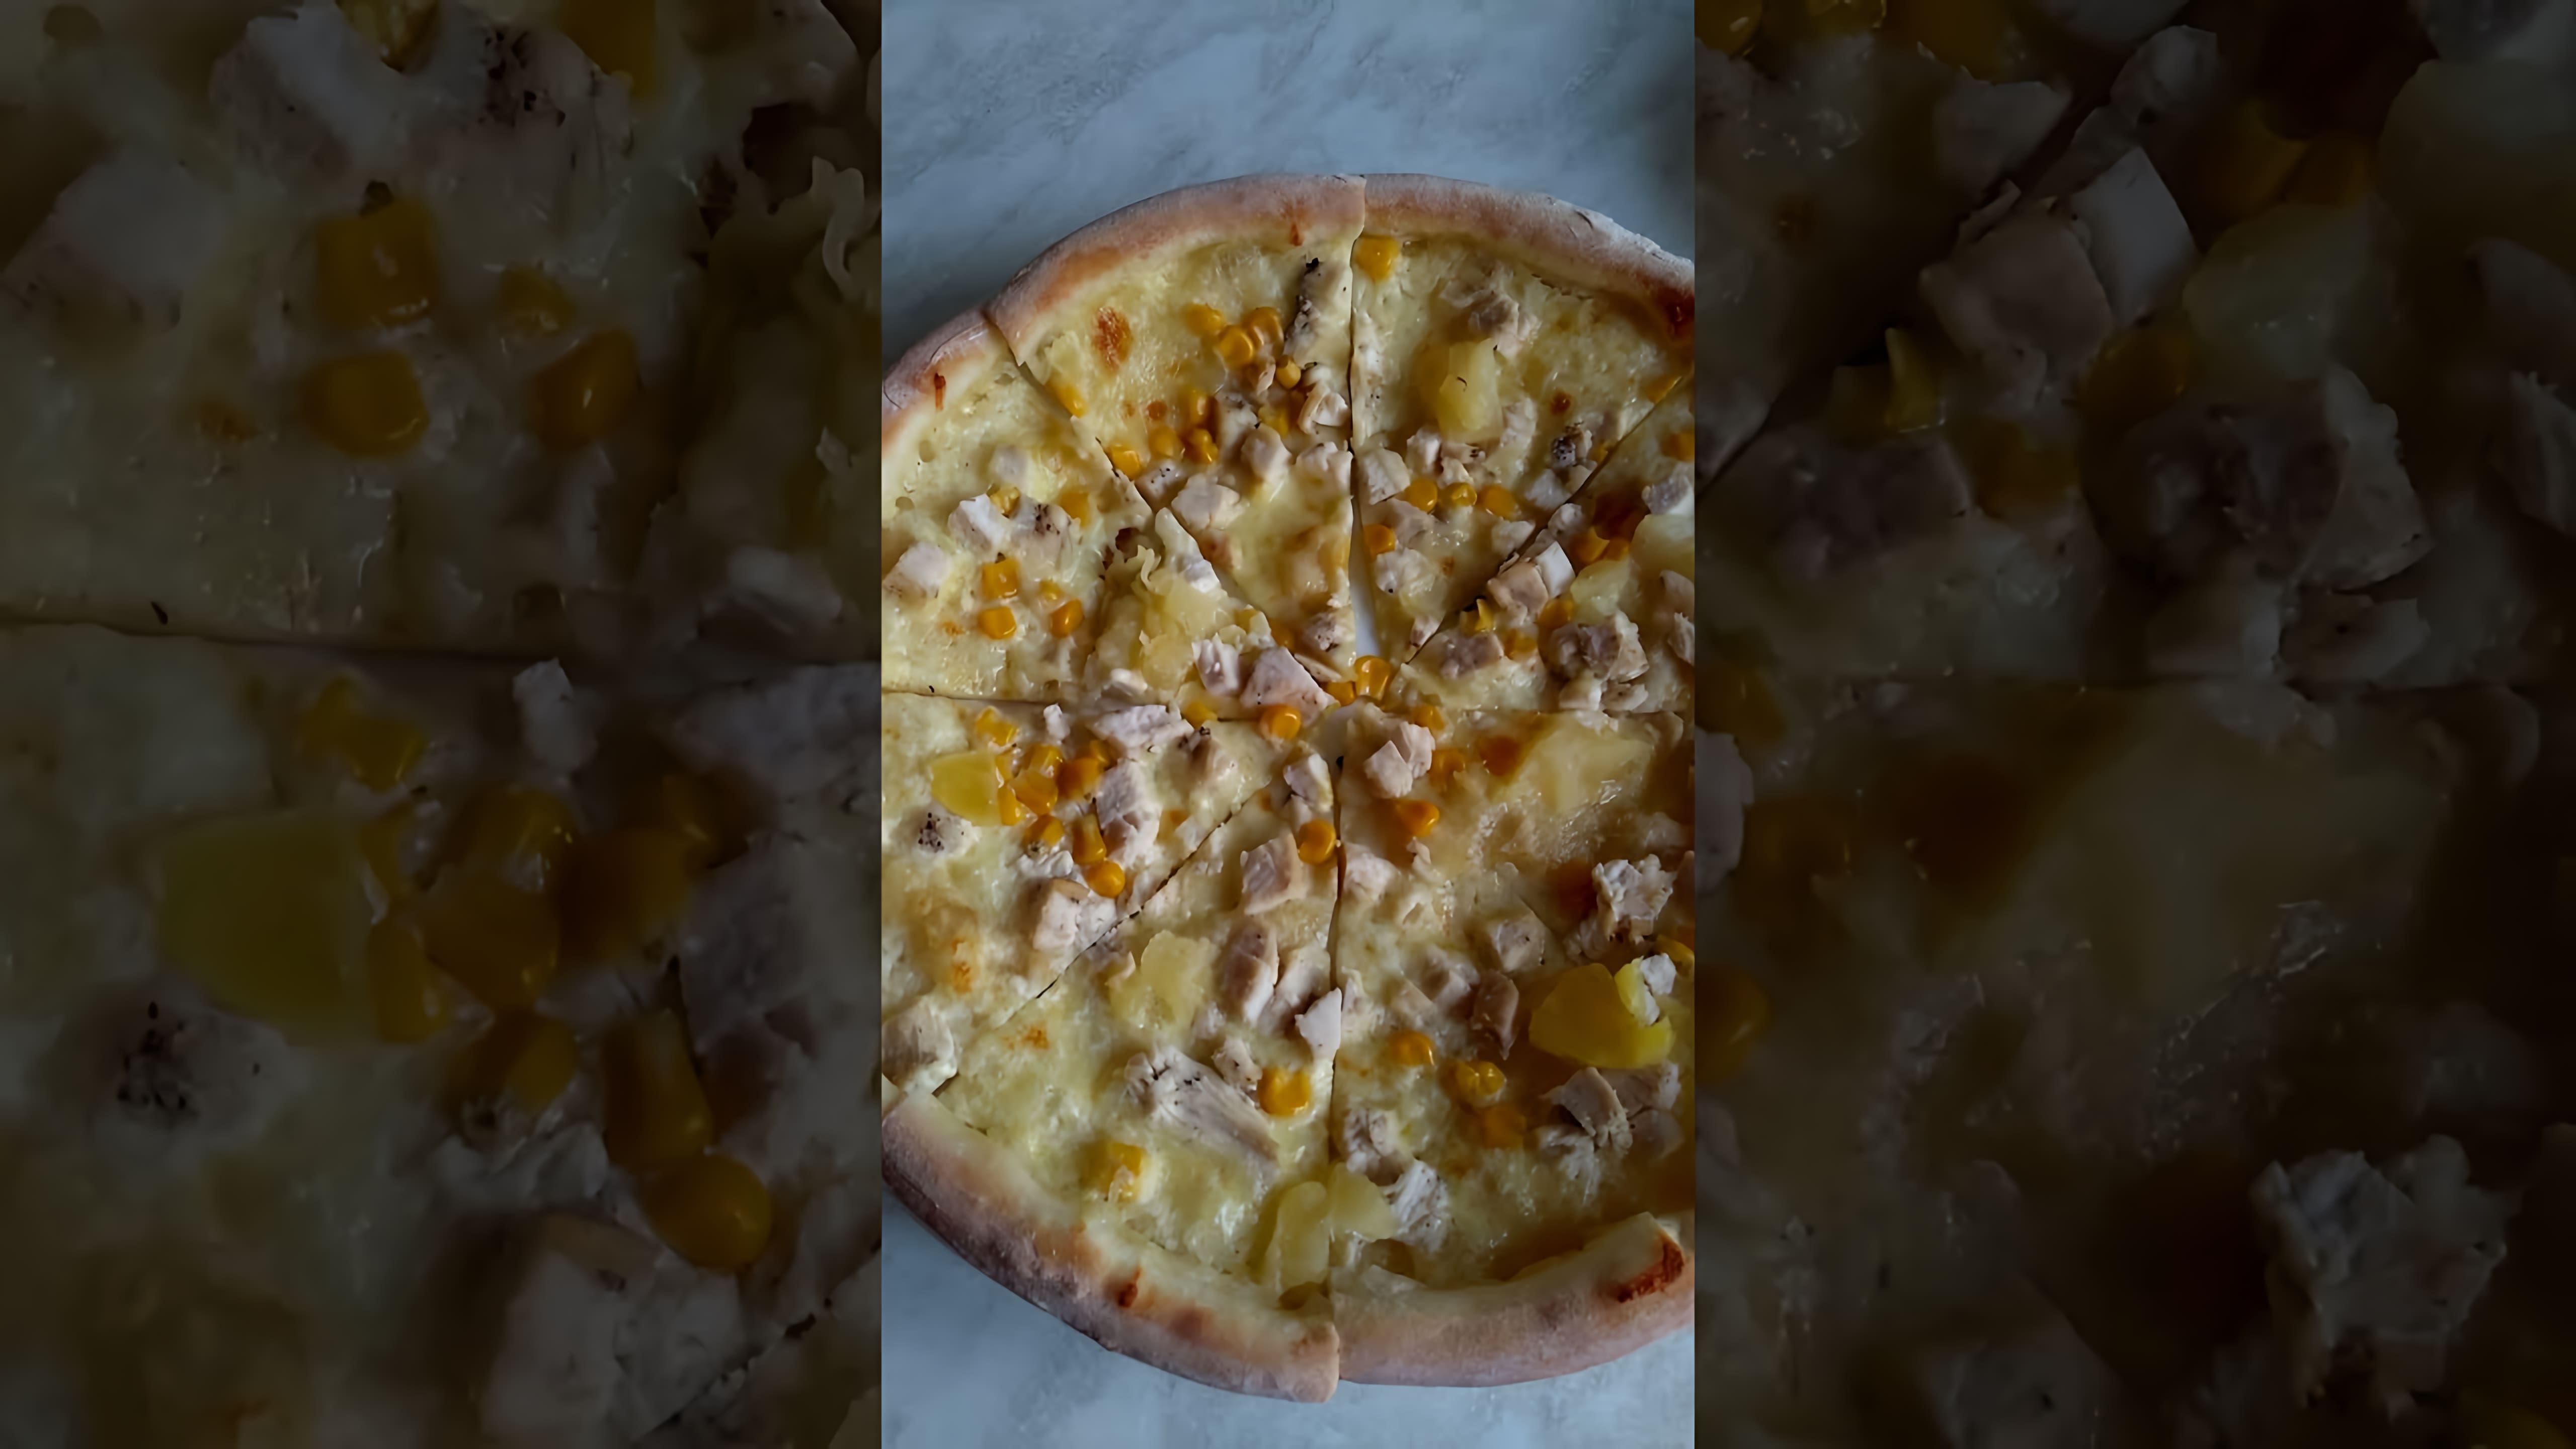 В этом видео-ролике мы увидим процесс приготовления двух видов пиццы: гавайской и с курицей и ананасом